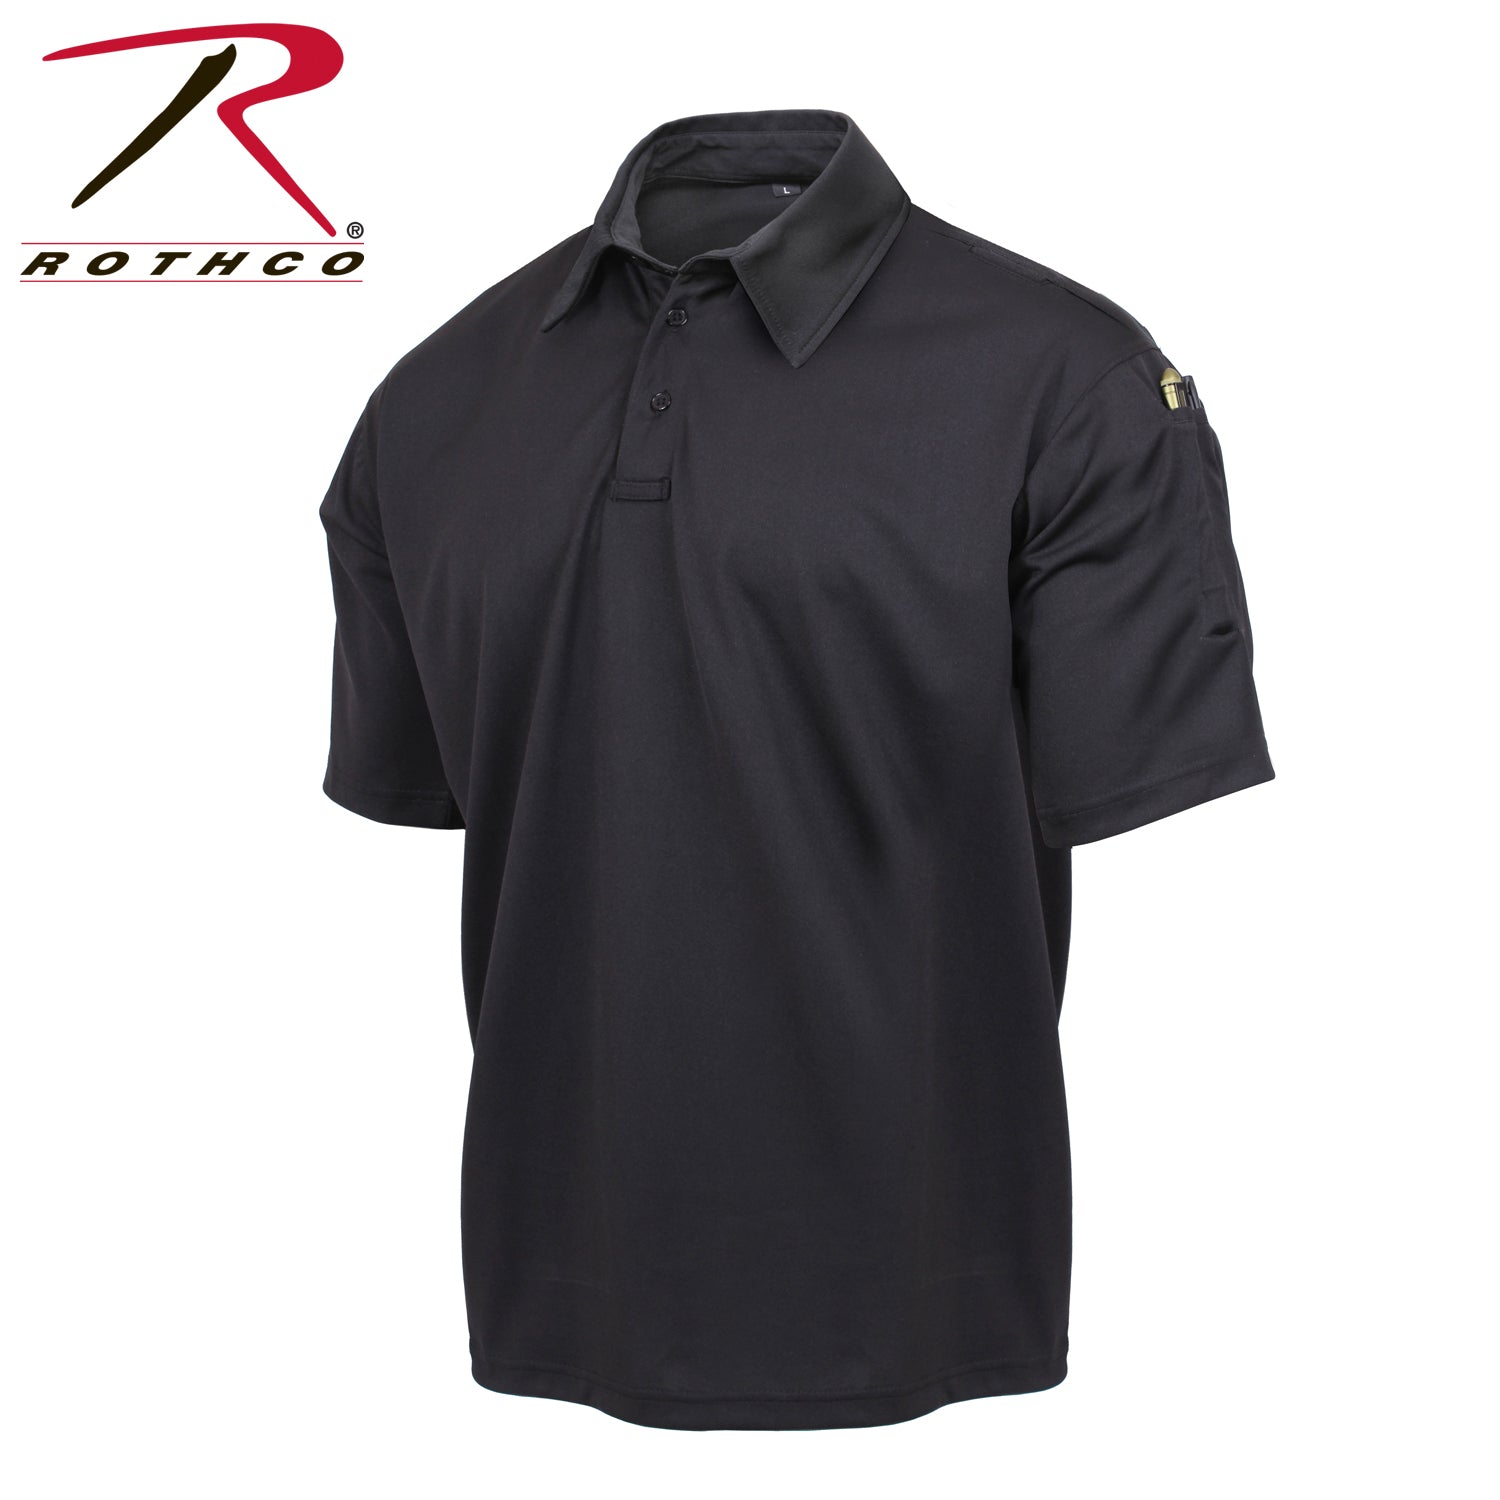 Rothco Tactical Performance Polo Shirt